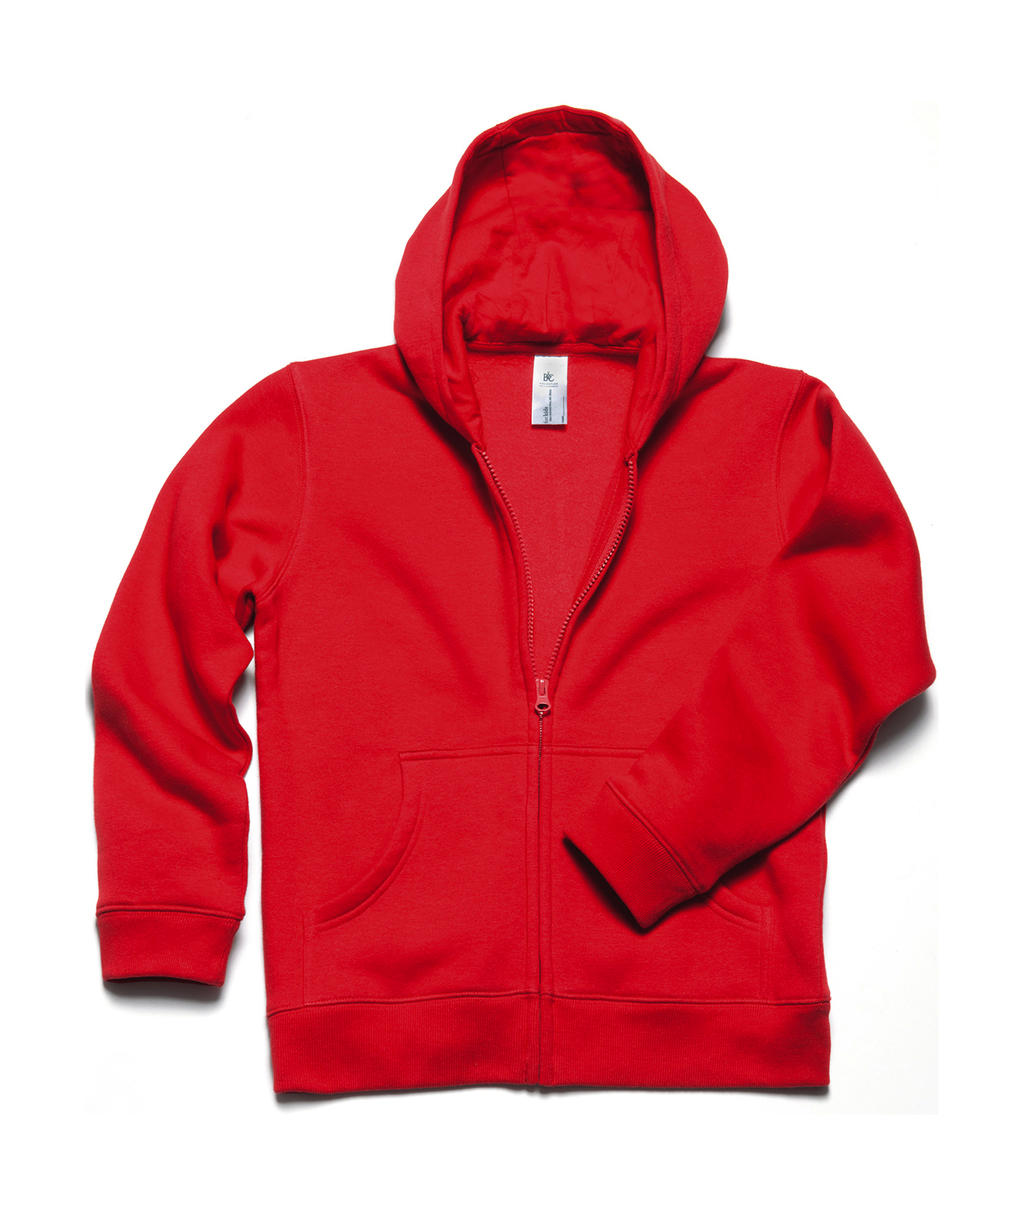 Detská mikina s kapucňou Hooded Full Zip/kids - red